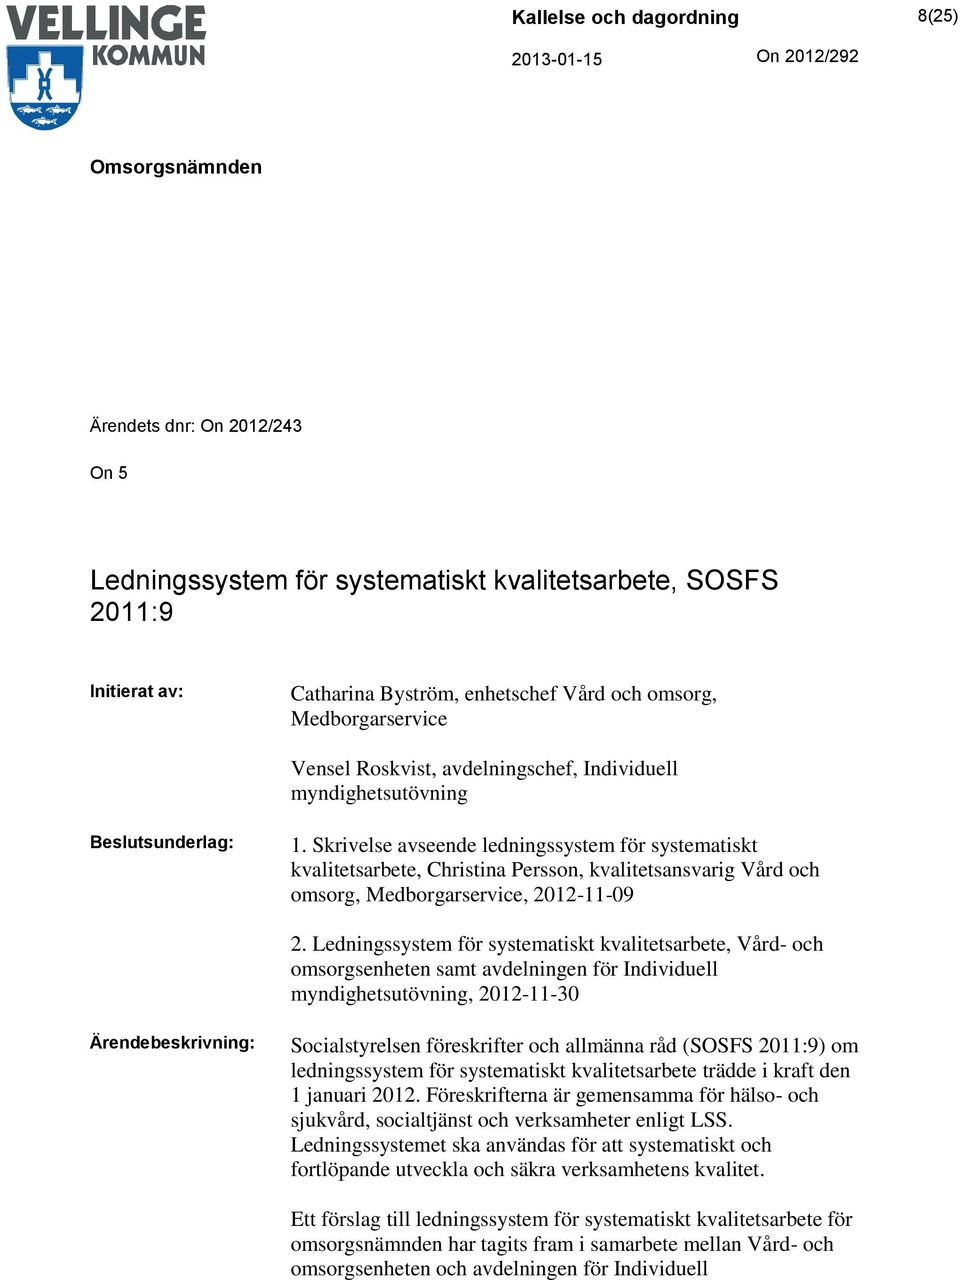 Skrivelse avseende ledningssystem för systematiskt kvalitetsarbete, Christina Persson, kvalitetsansvarig Vård och omsorg, Medborgarservice, 2012-11-09 2.